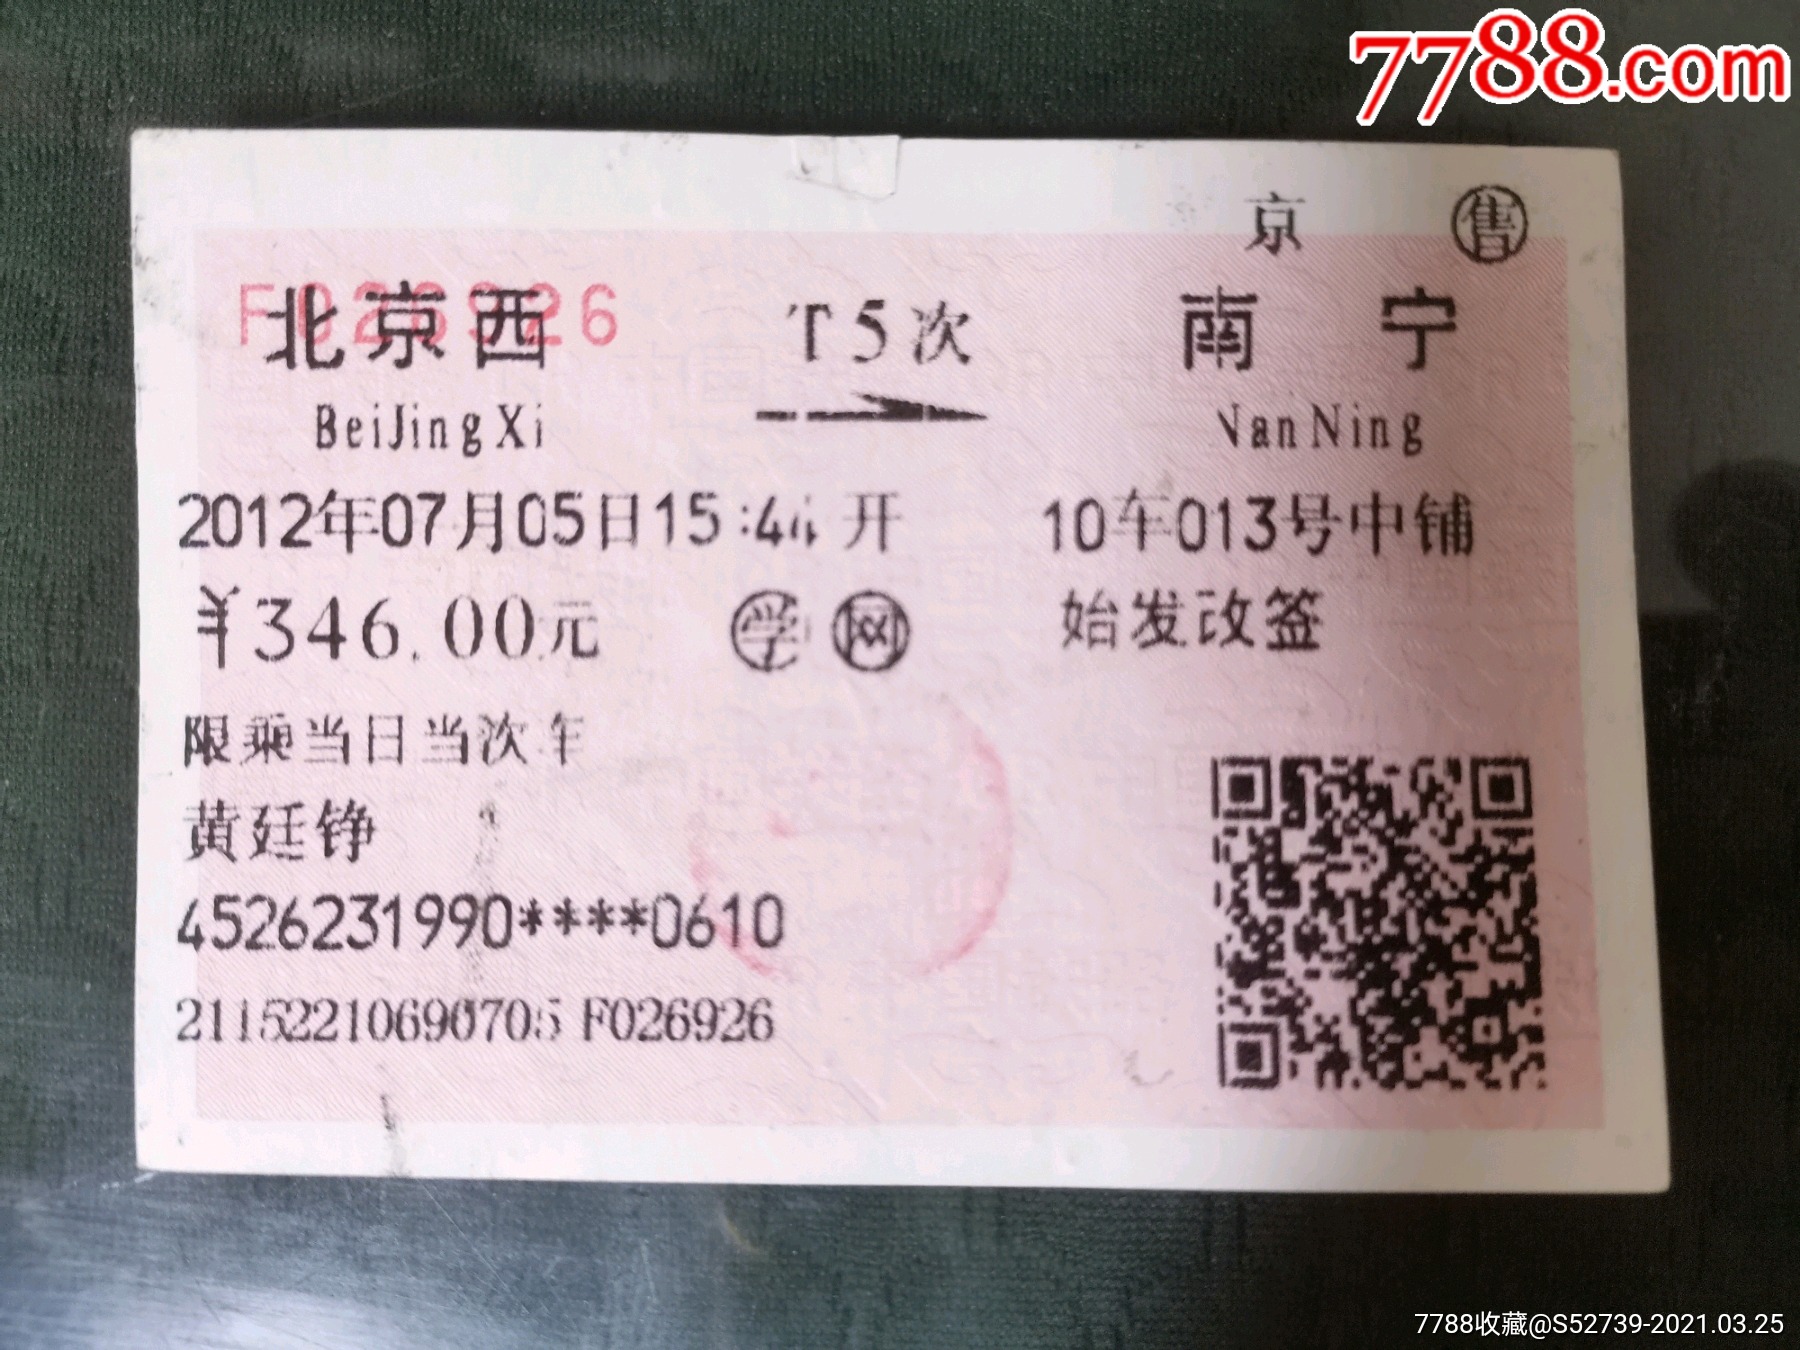 到北京火车几点售票时间是多少钱 到北京火车几点售票时间是多少钱啊